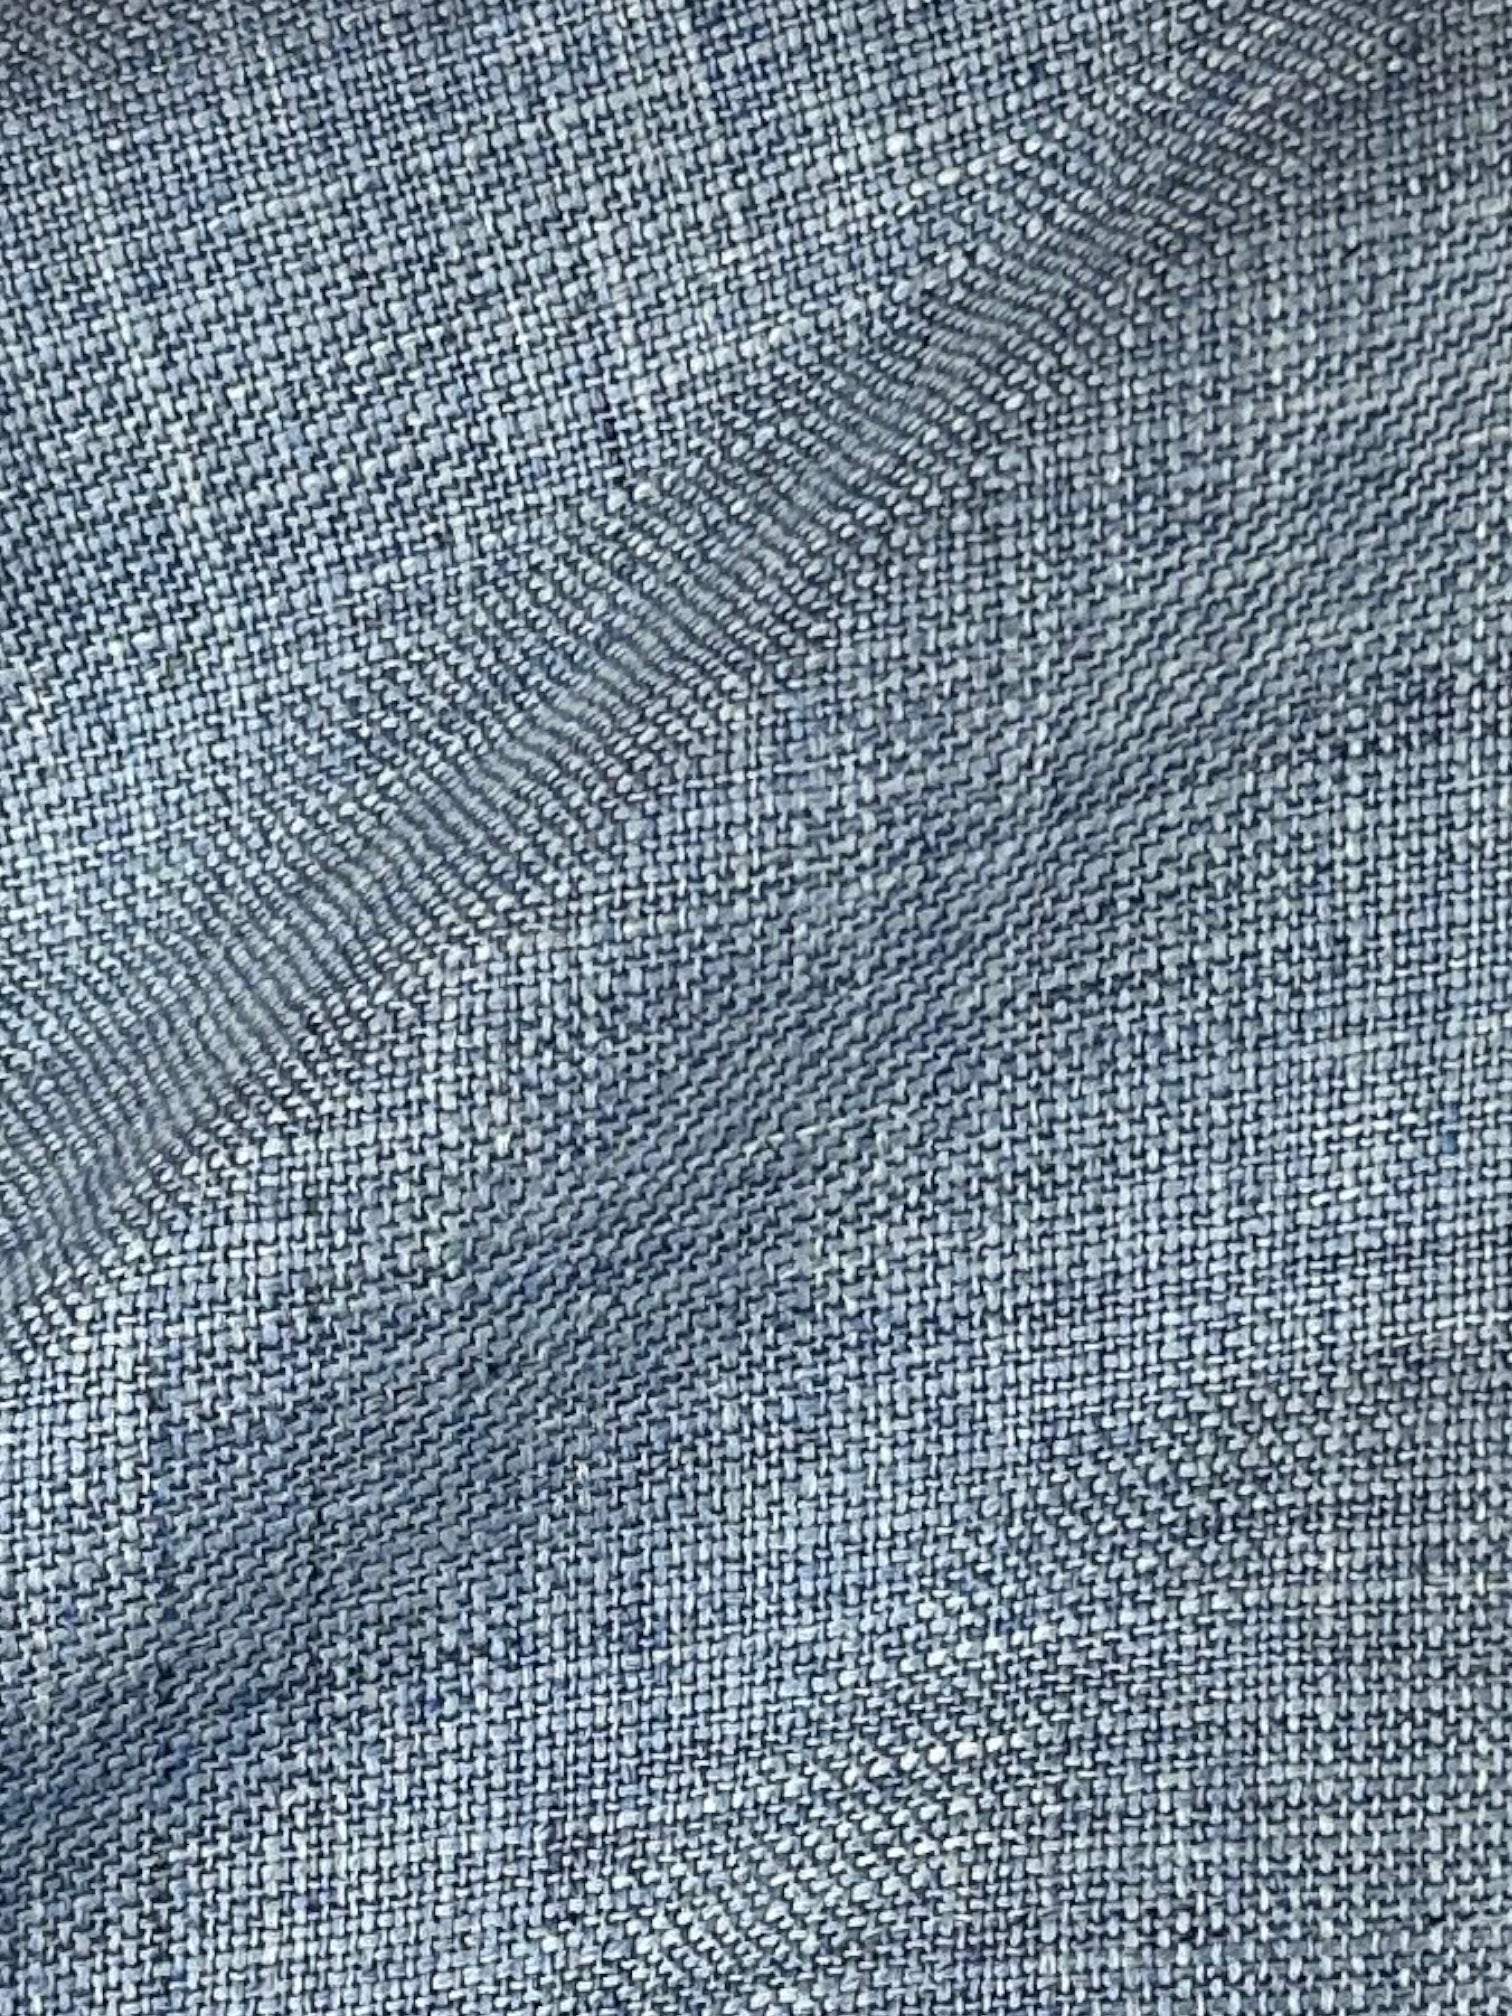 Canali lichtblauw jasje van wol, linnen en zijde